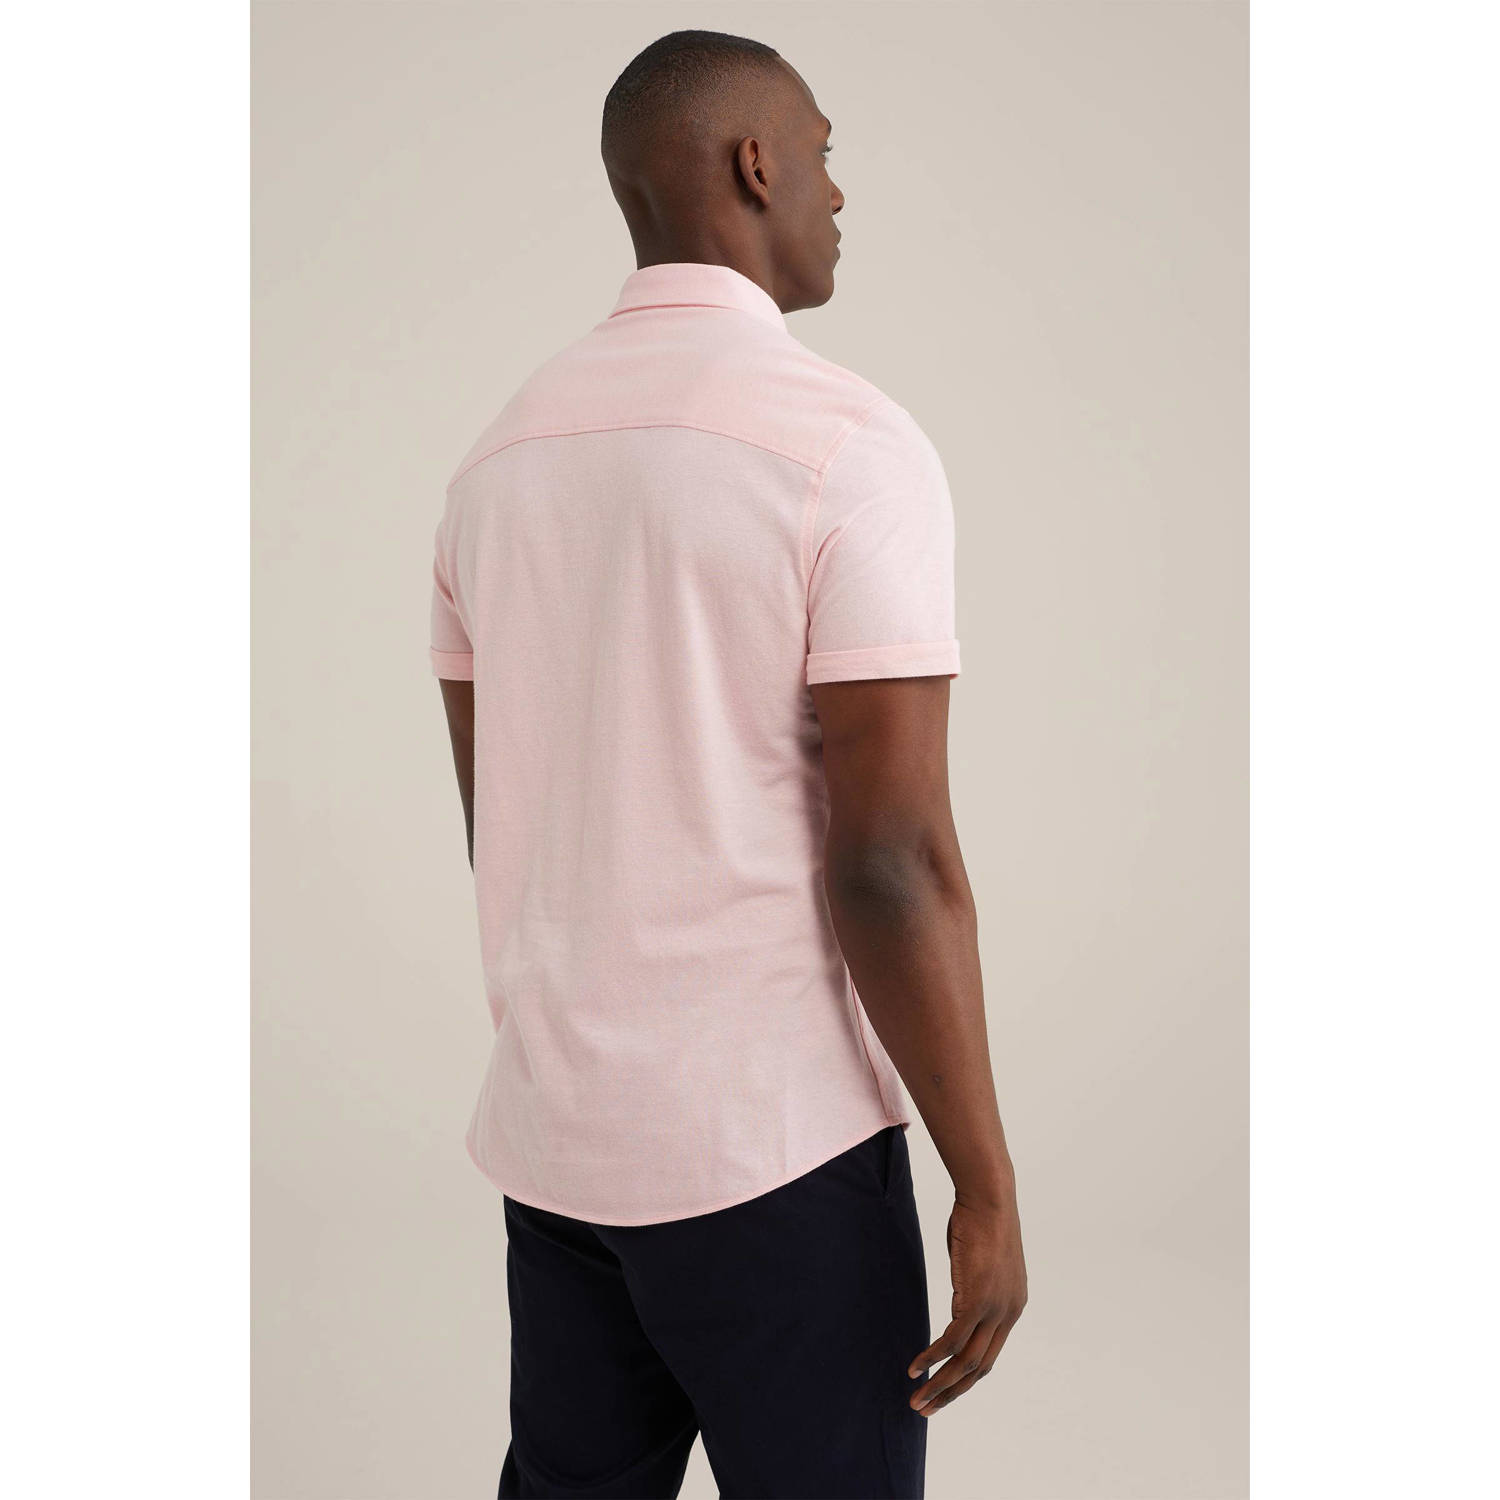 WE Fashion slim fit overhemd light pink